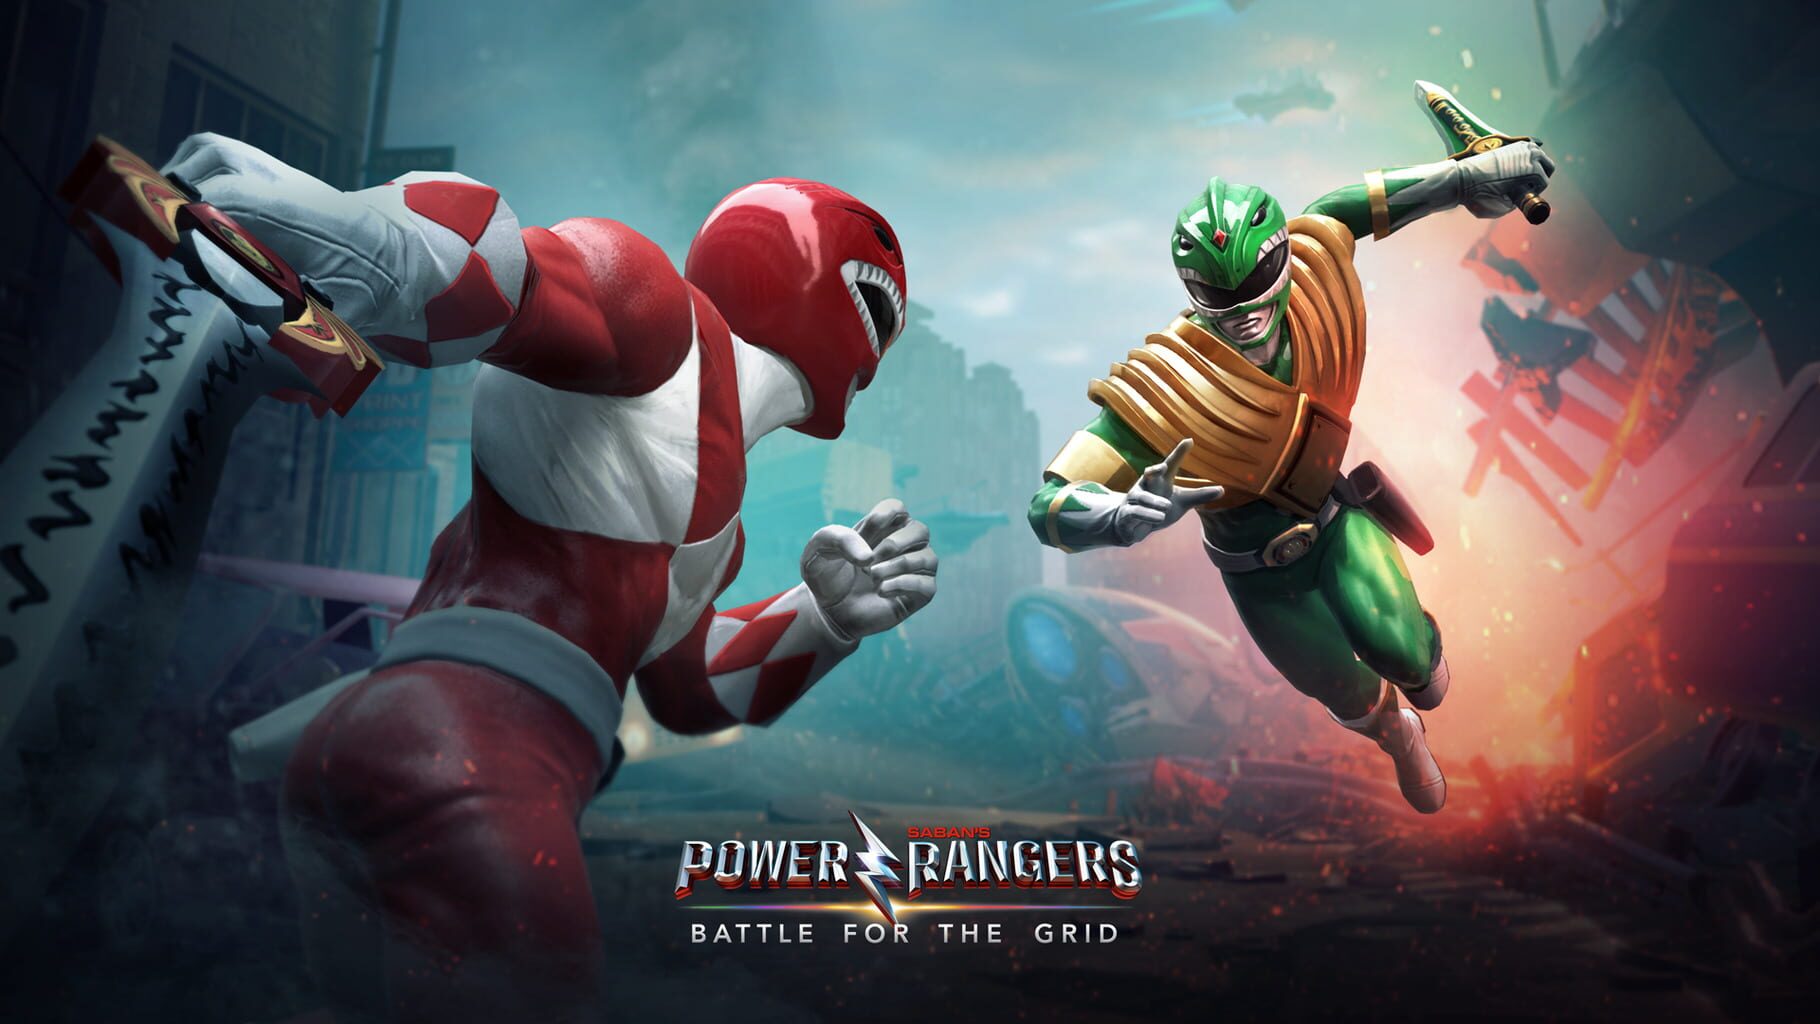 Arte - Power Rangers: Battle for the Grid